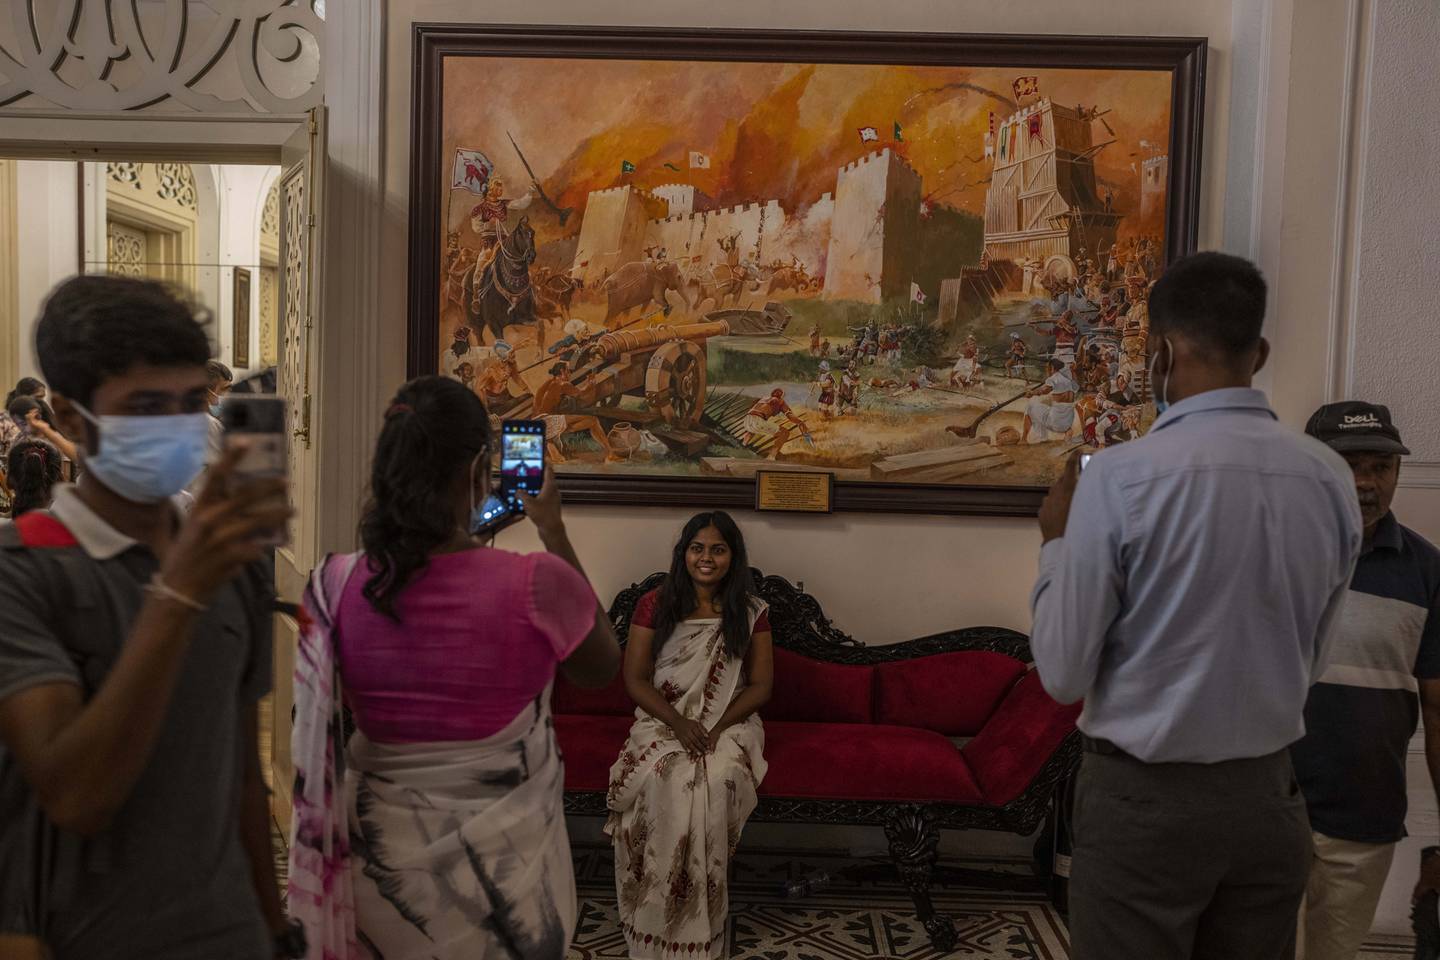 Folk tar selfier foran malerier i presidentpalasset i Colombo etter at palasset ble stormet og president Gotabaya Rajapaksa tvunget til å gå av. Foto: Rafiq Maqbool / AP / NTB